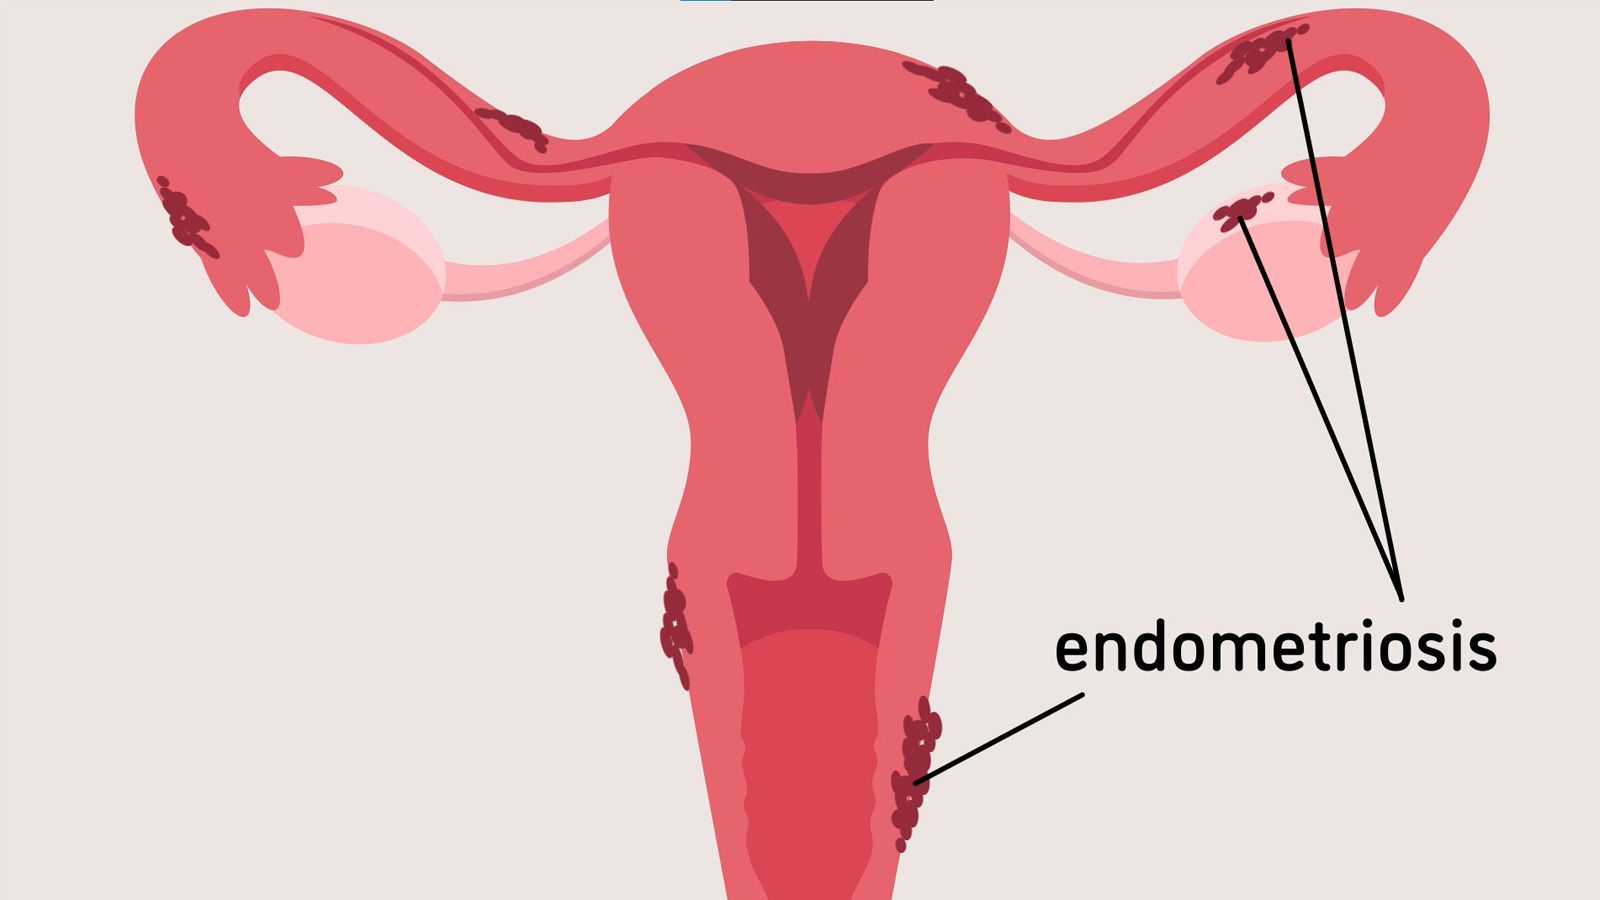 Endometriosis - Symptoms, Diagnosis, and Treatments For Endometriosis